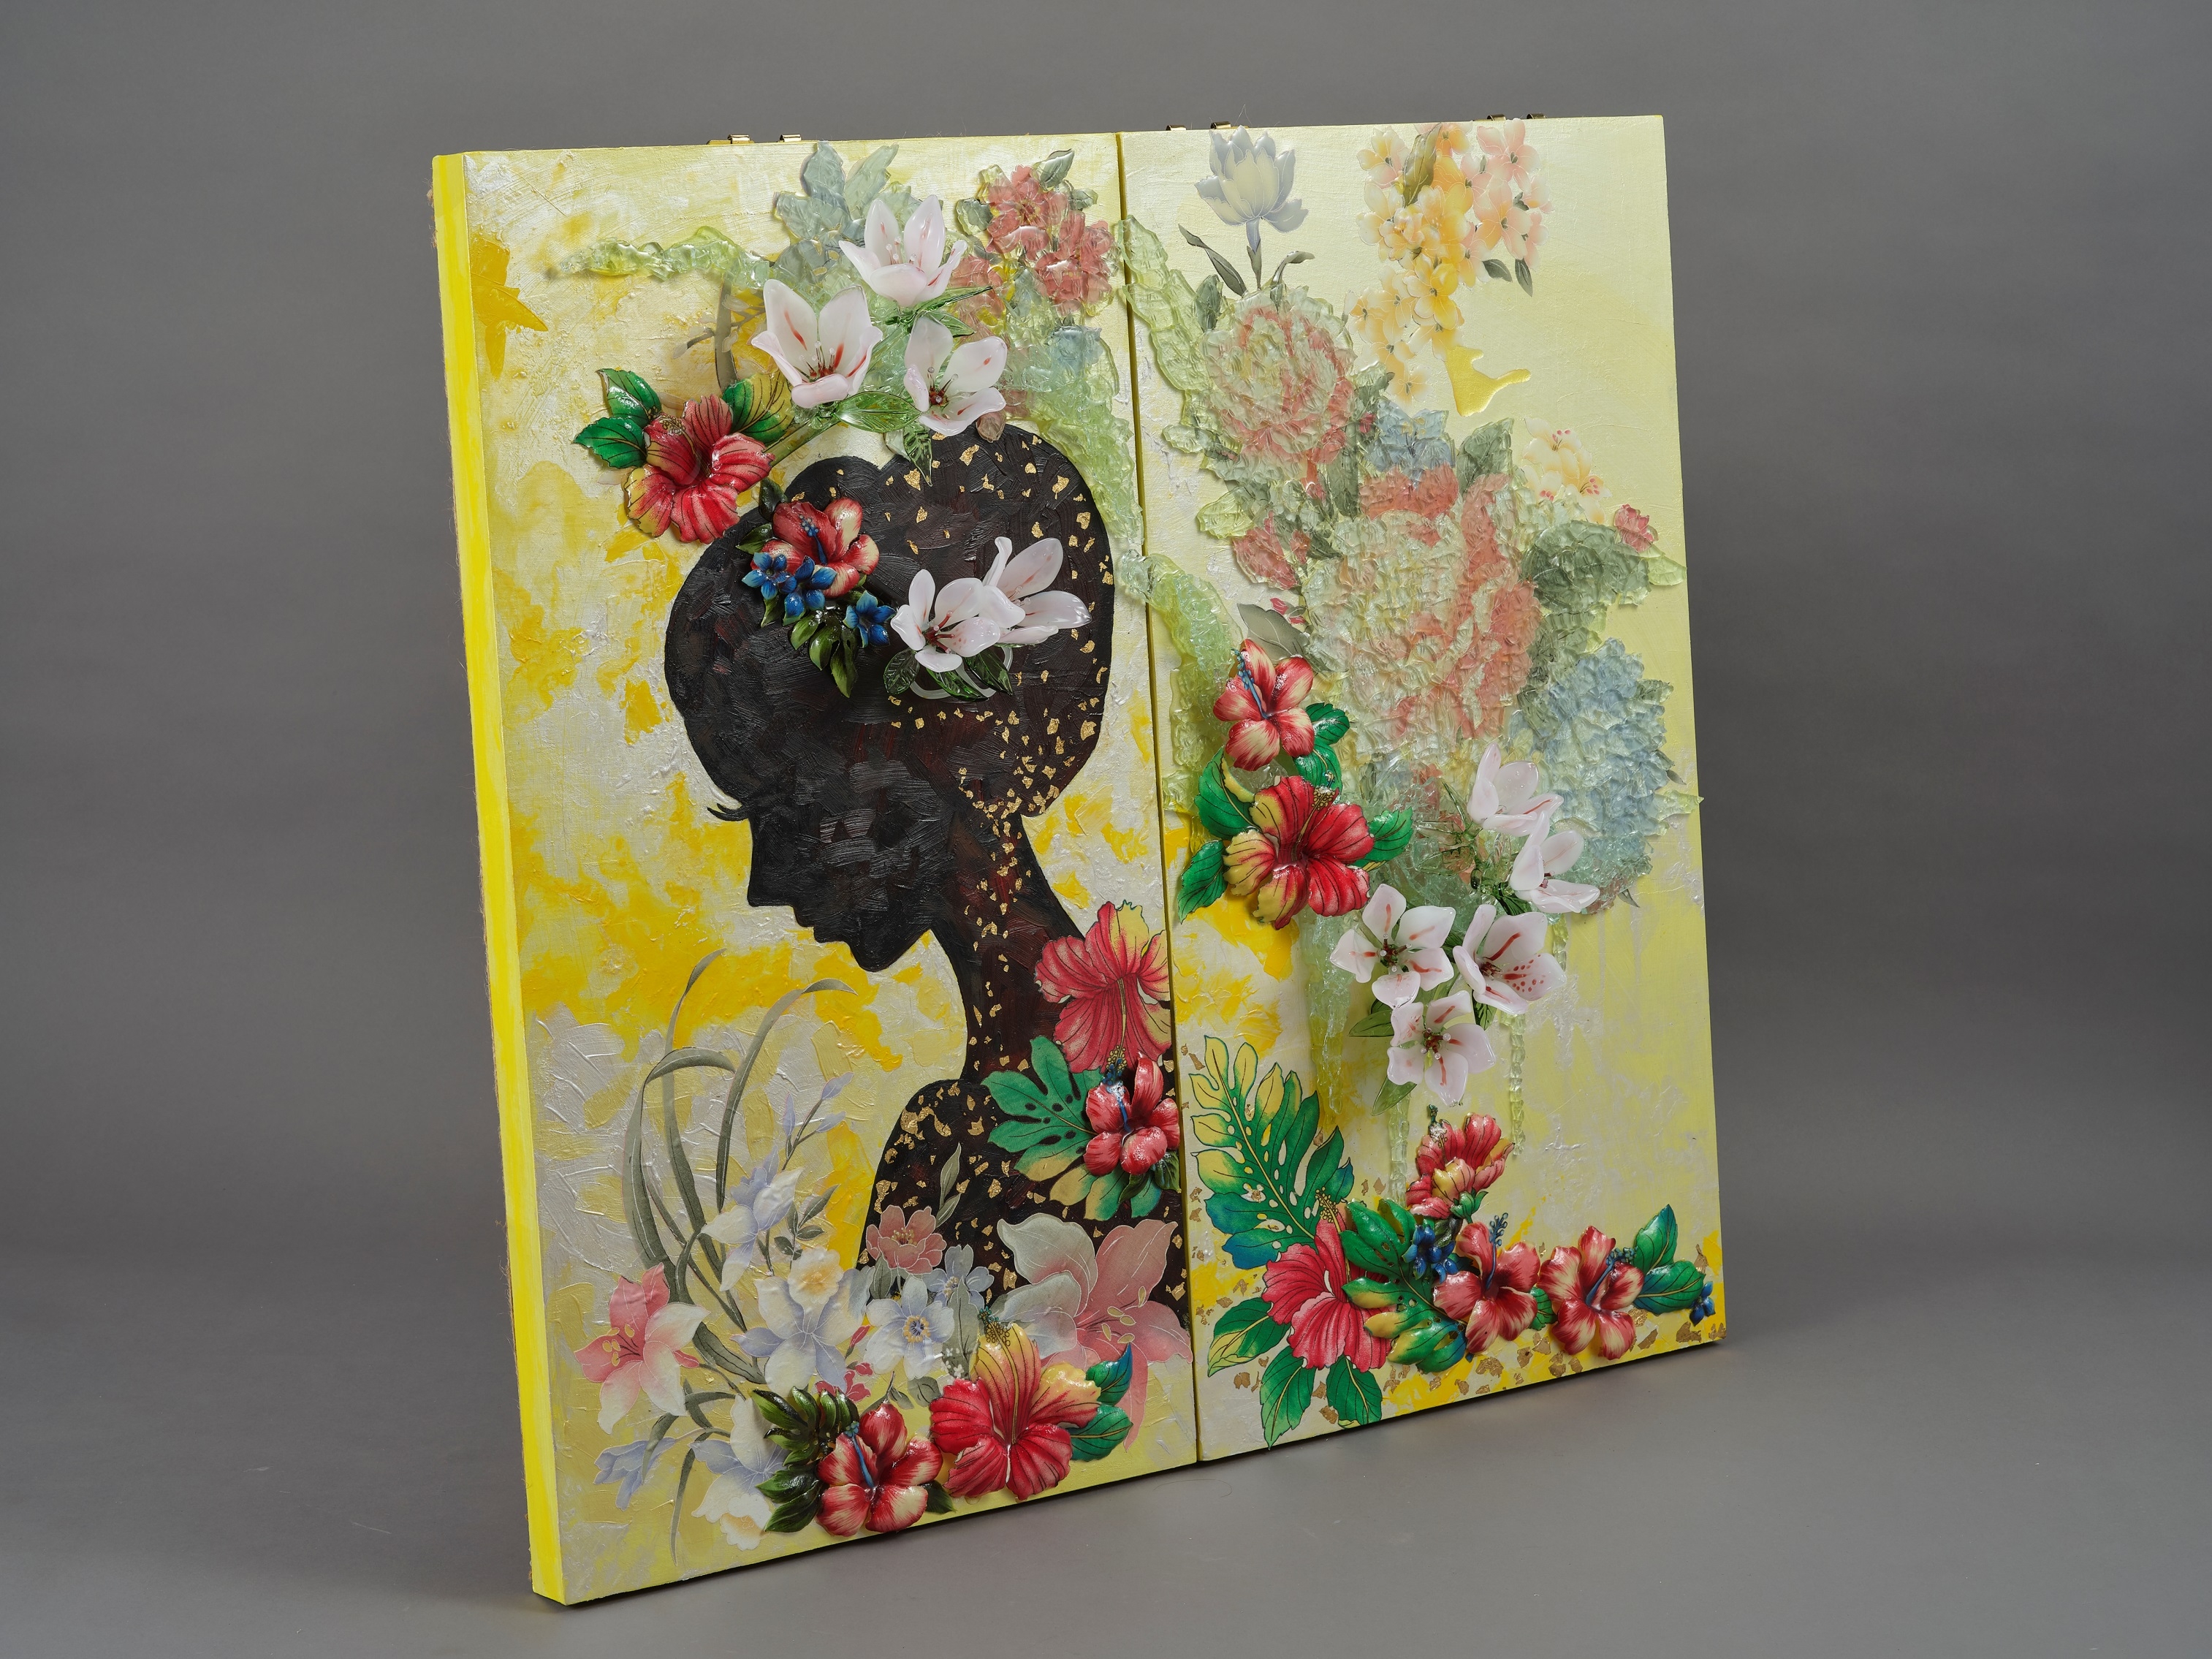 品中女人側邊肖像以黑色剪影呈現，對比色彩繽紛的繁花，立體與平面的花朵交織，超現實的如同夢境般。藝術家發掘出玻璃無限的創意及其技法的多樣性。